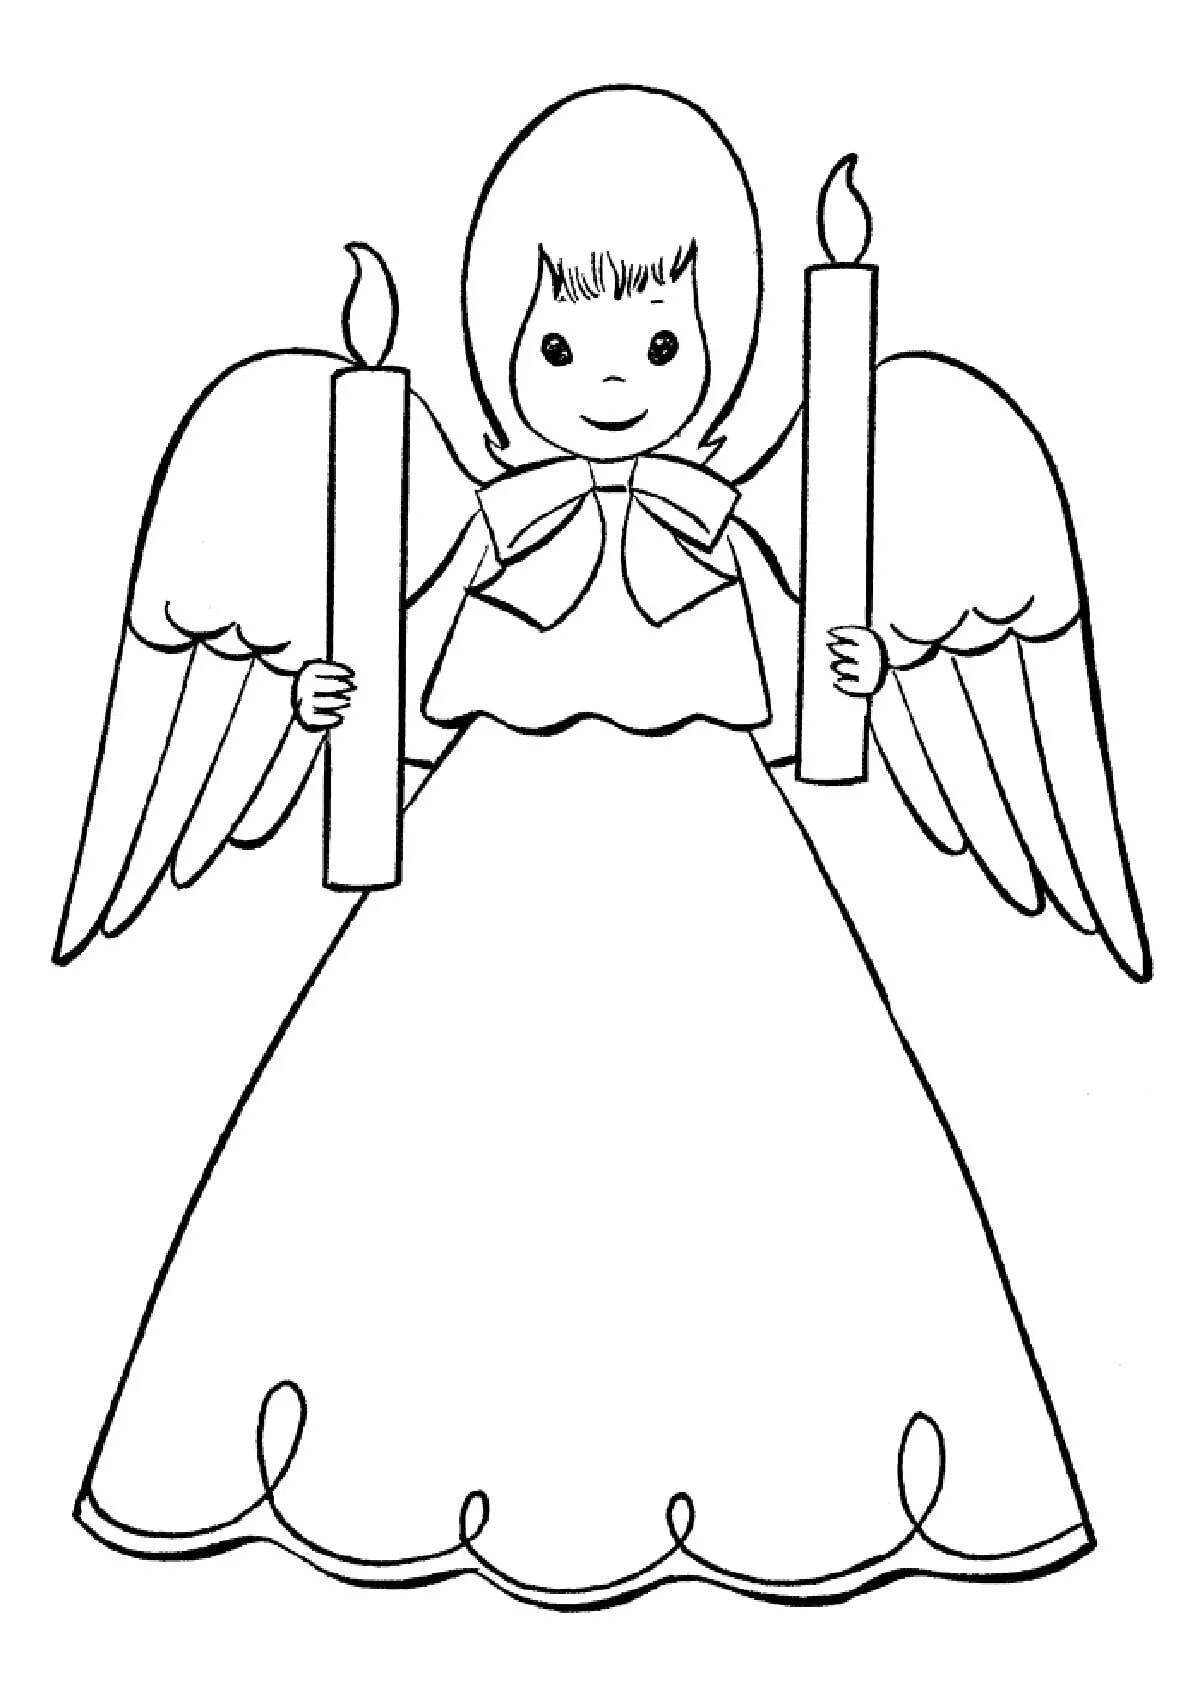 Симпатичная раскраска ангел для детей 3-4 лет